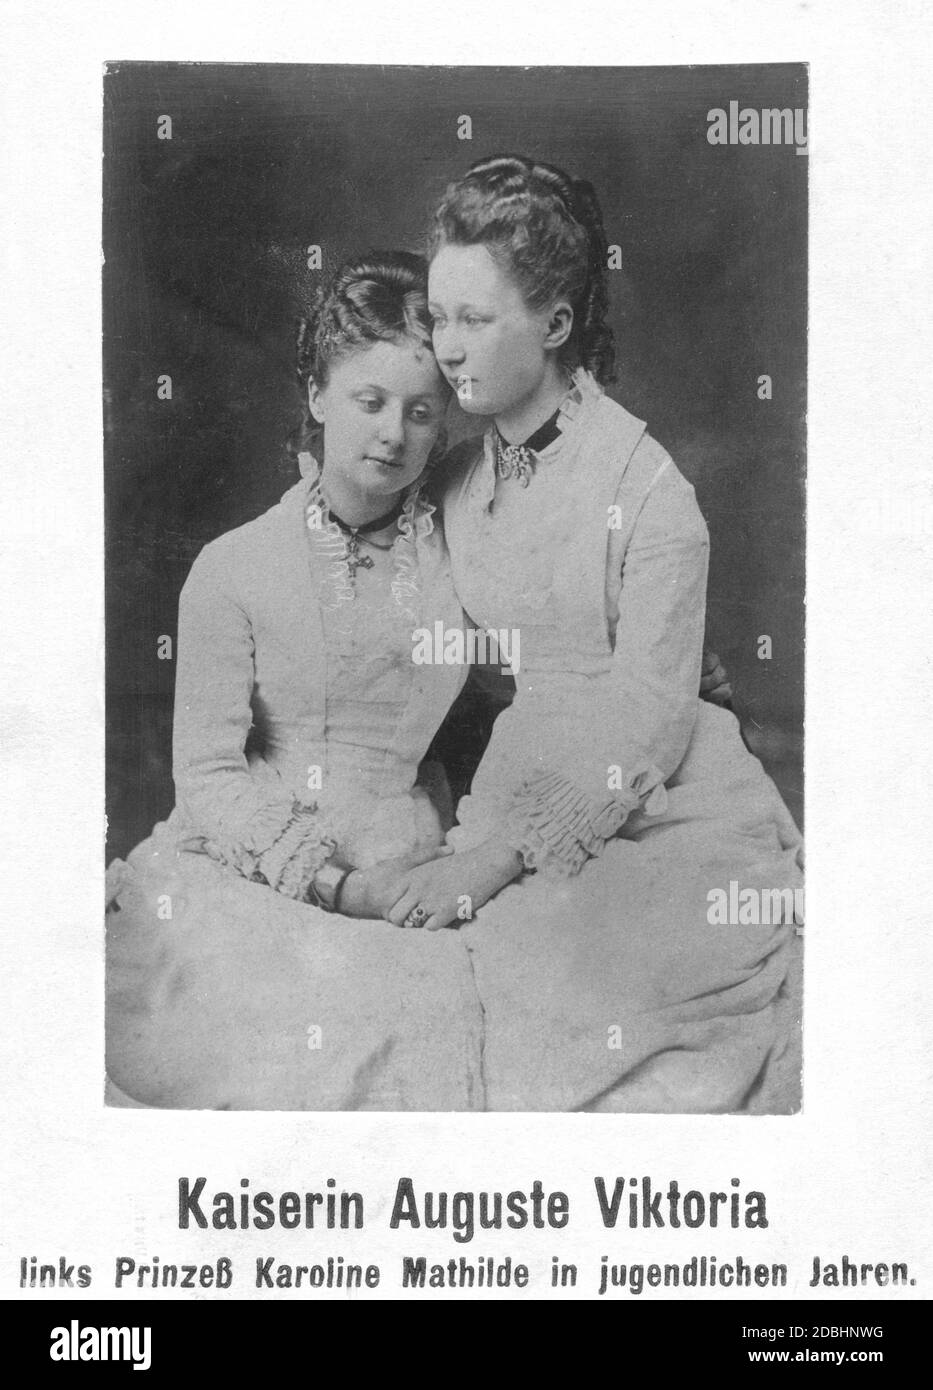 Il ritratto mostra le sorelle e le principesse Caroline Mathilde (a sinistra) e Augusta Victoria di Schleswig-Holstein-Sonderburg-Augustenburg (a destra, poi imperatrice di Germania). Foto non datata, scattata intorno al 1875. Foto Stock